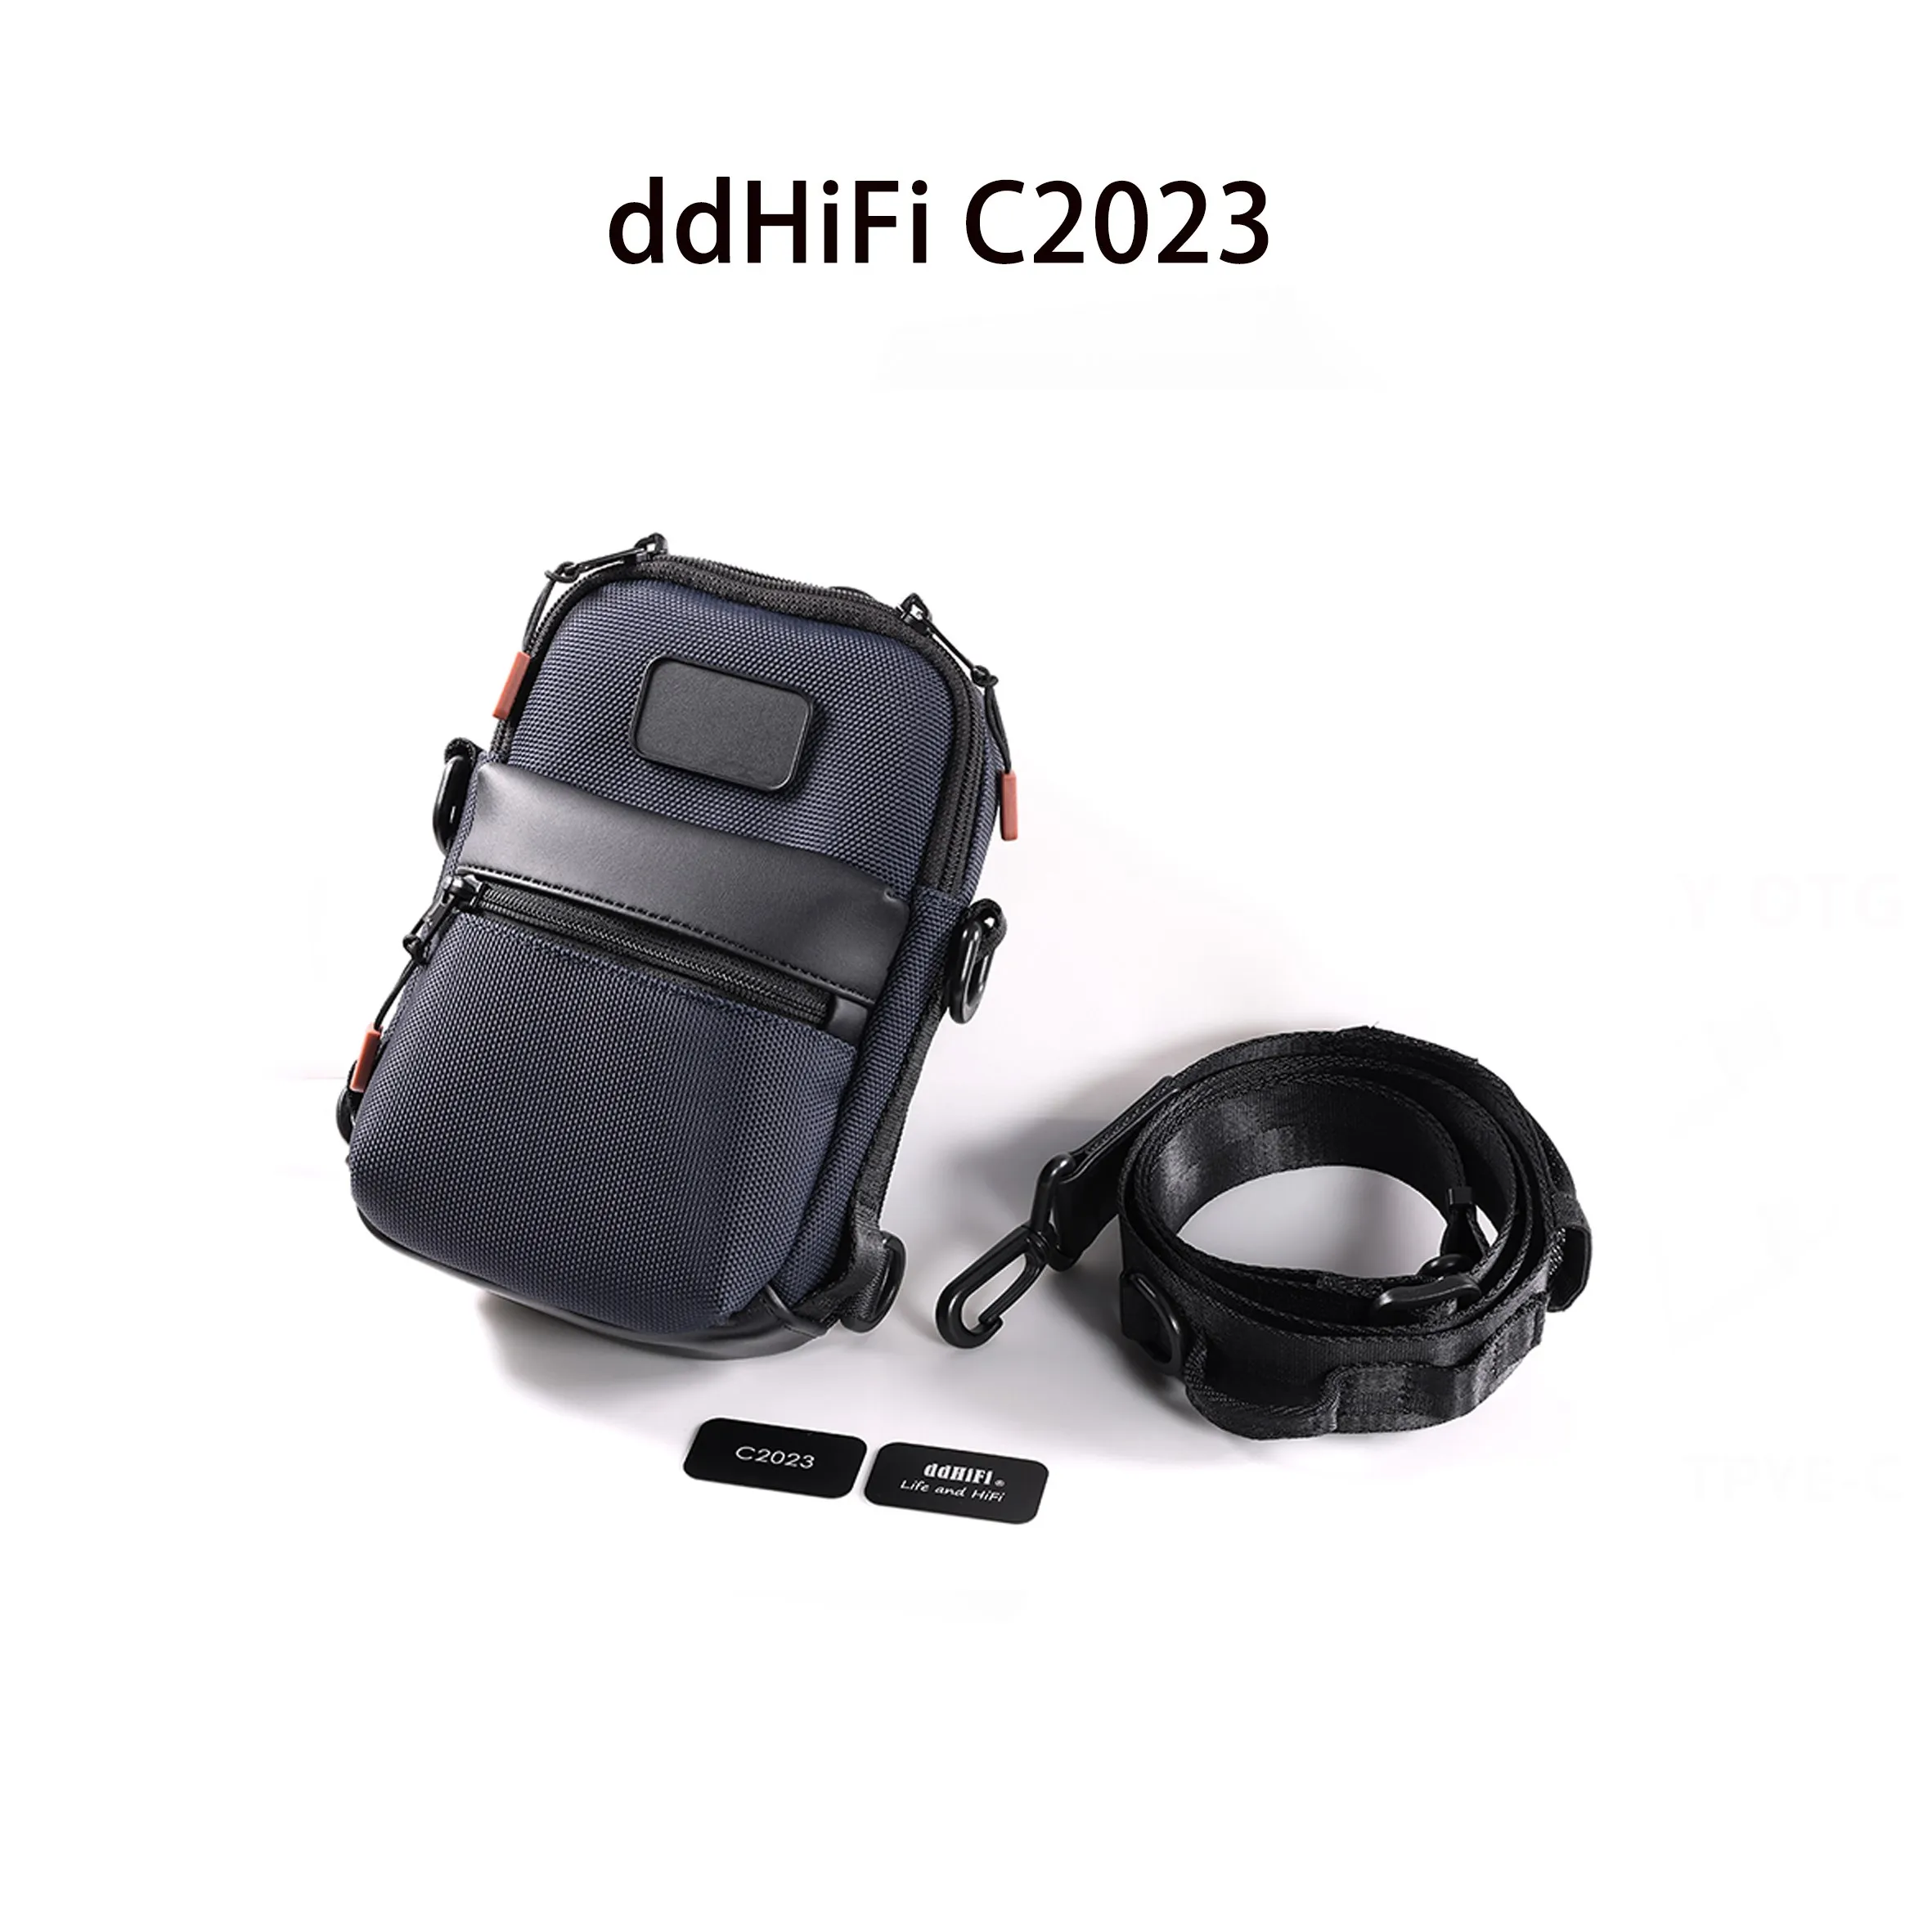 ddHiFi C2023 Чехол для переноски Hi-Fi для аудиофилов, многофункциональный рюкзак 